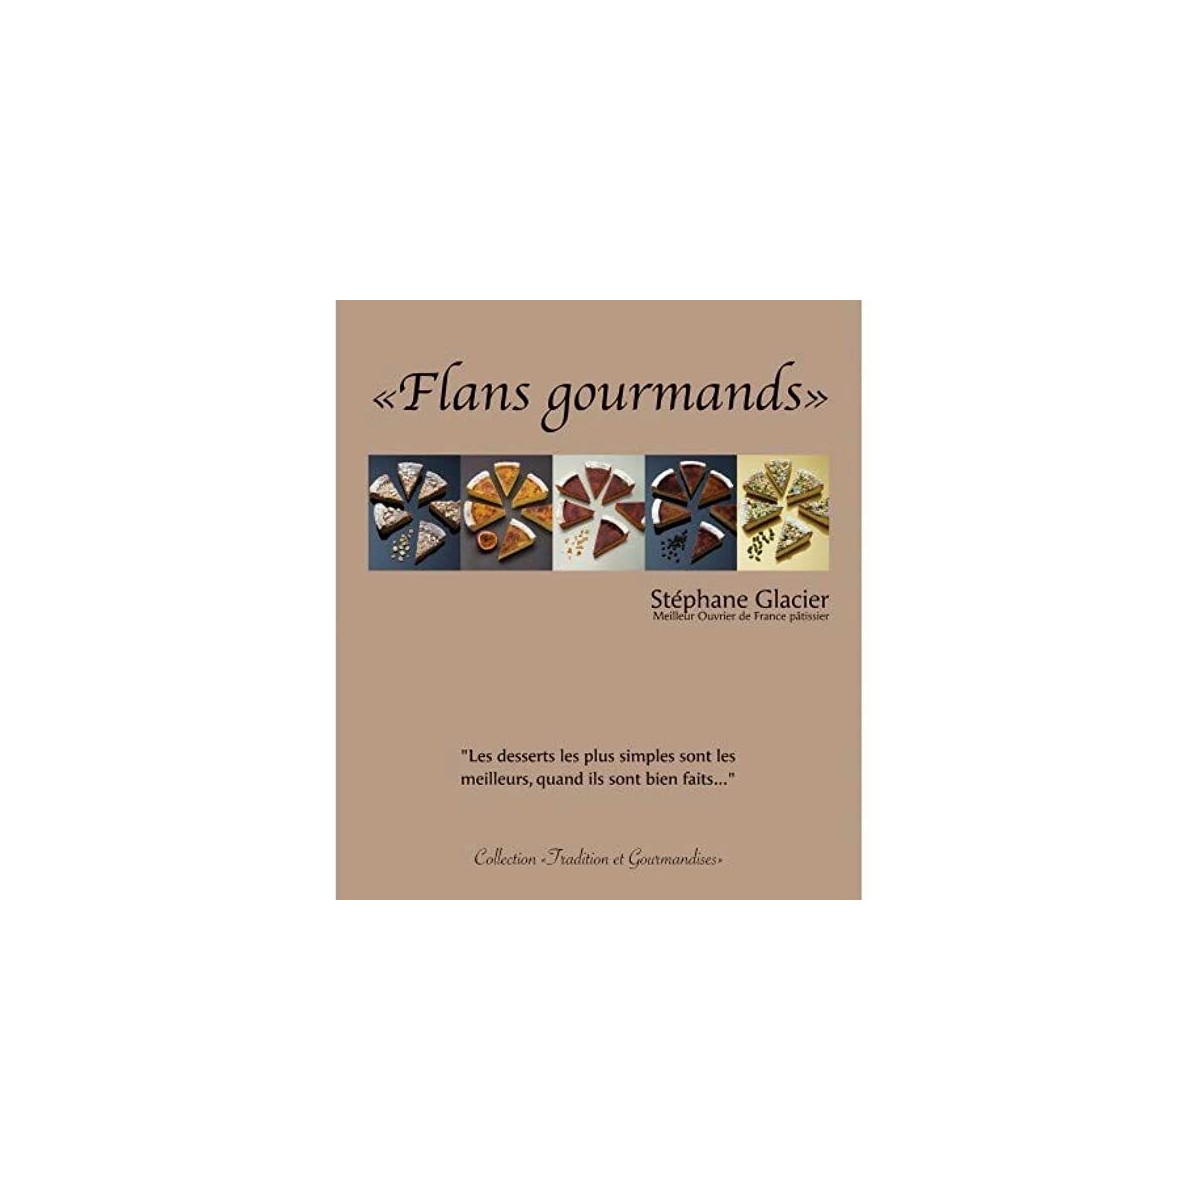 LIVRE "FLANS GOURMANDS" DE STEPHANE GLACIER